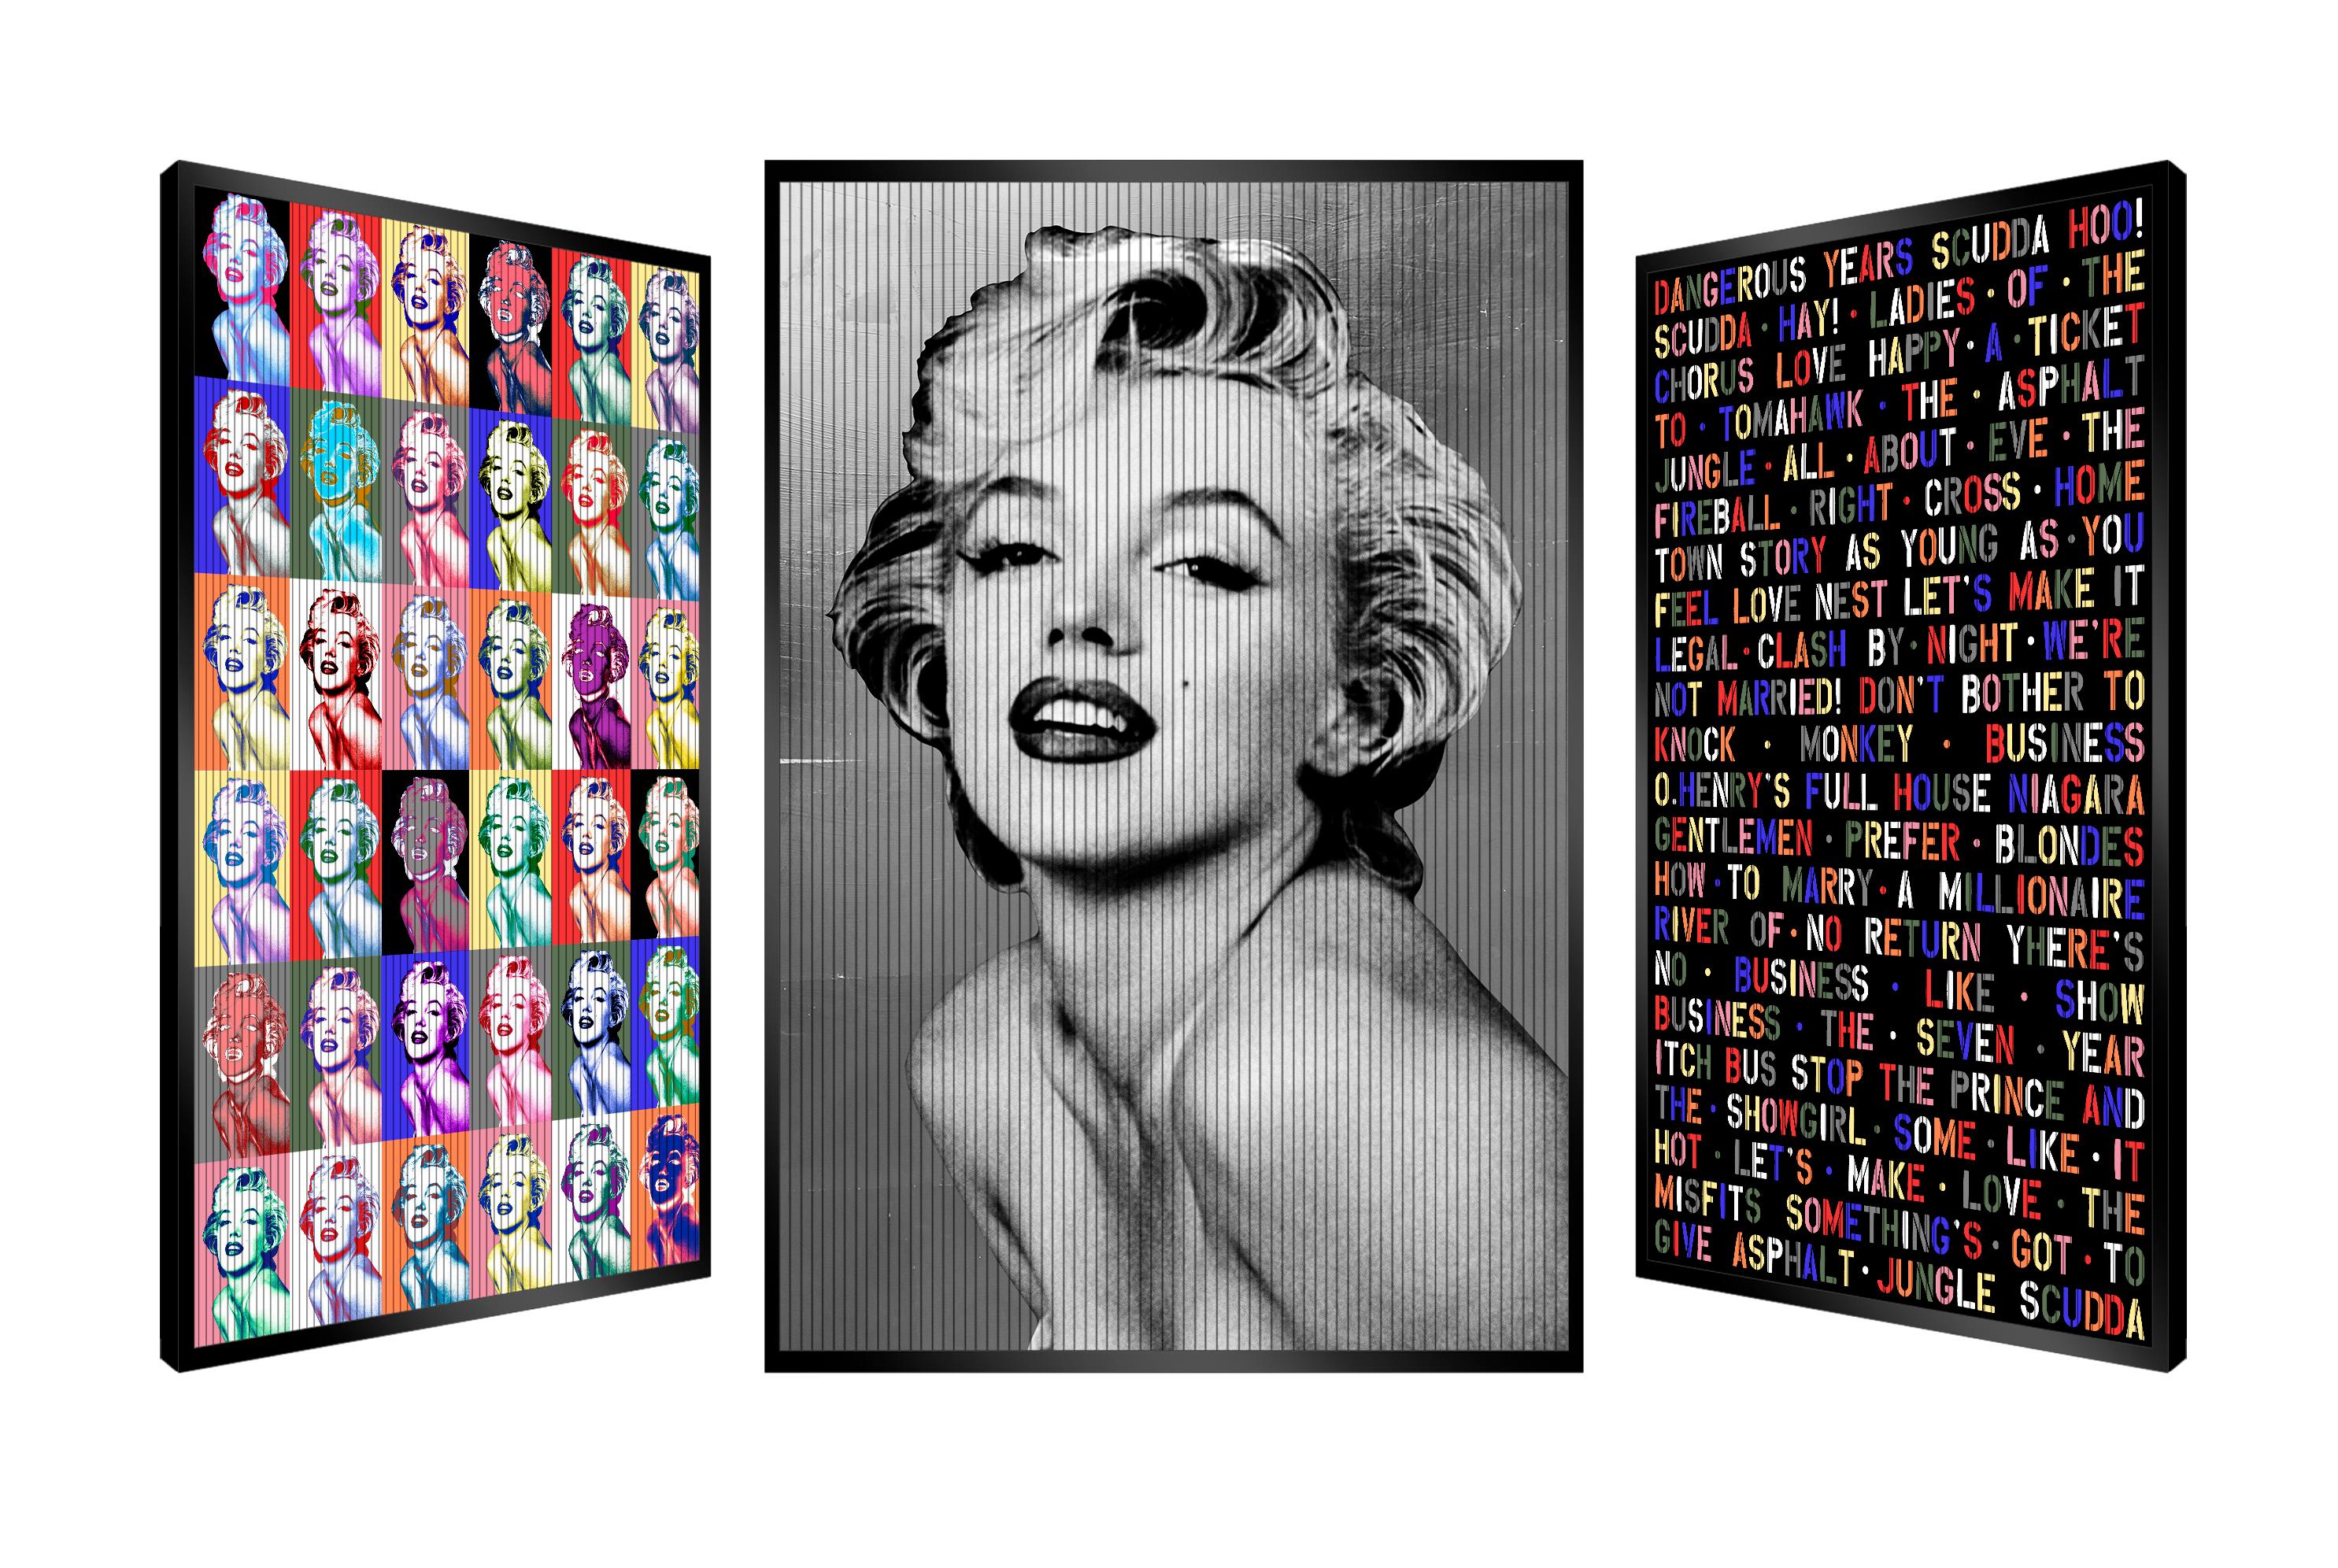 "Words of Love" Marilyn Monroe, Original Kinetic Artwork on Panel, Silver Leaf - Mixed Media Art by Patrick Rubinstein